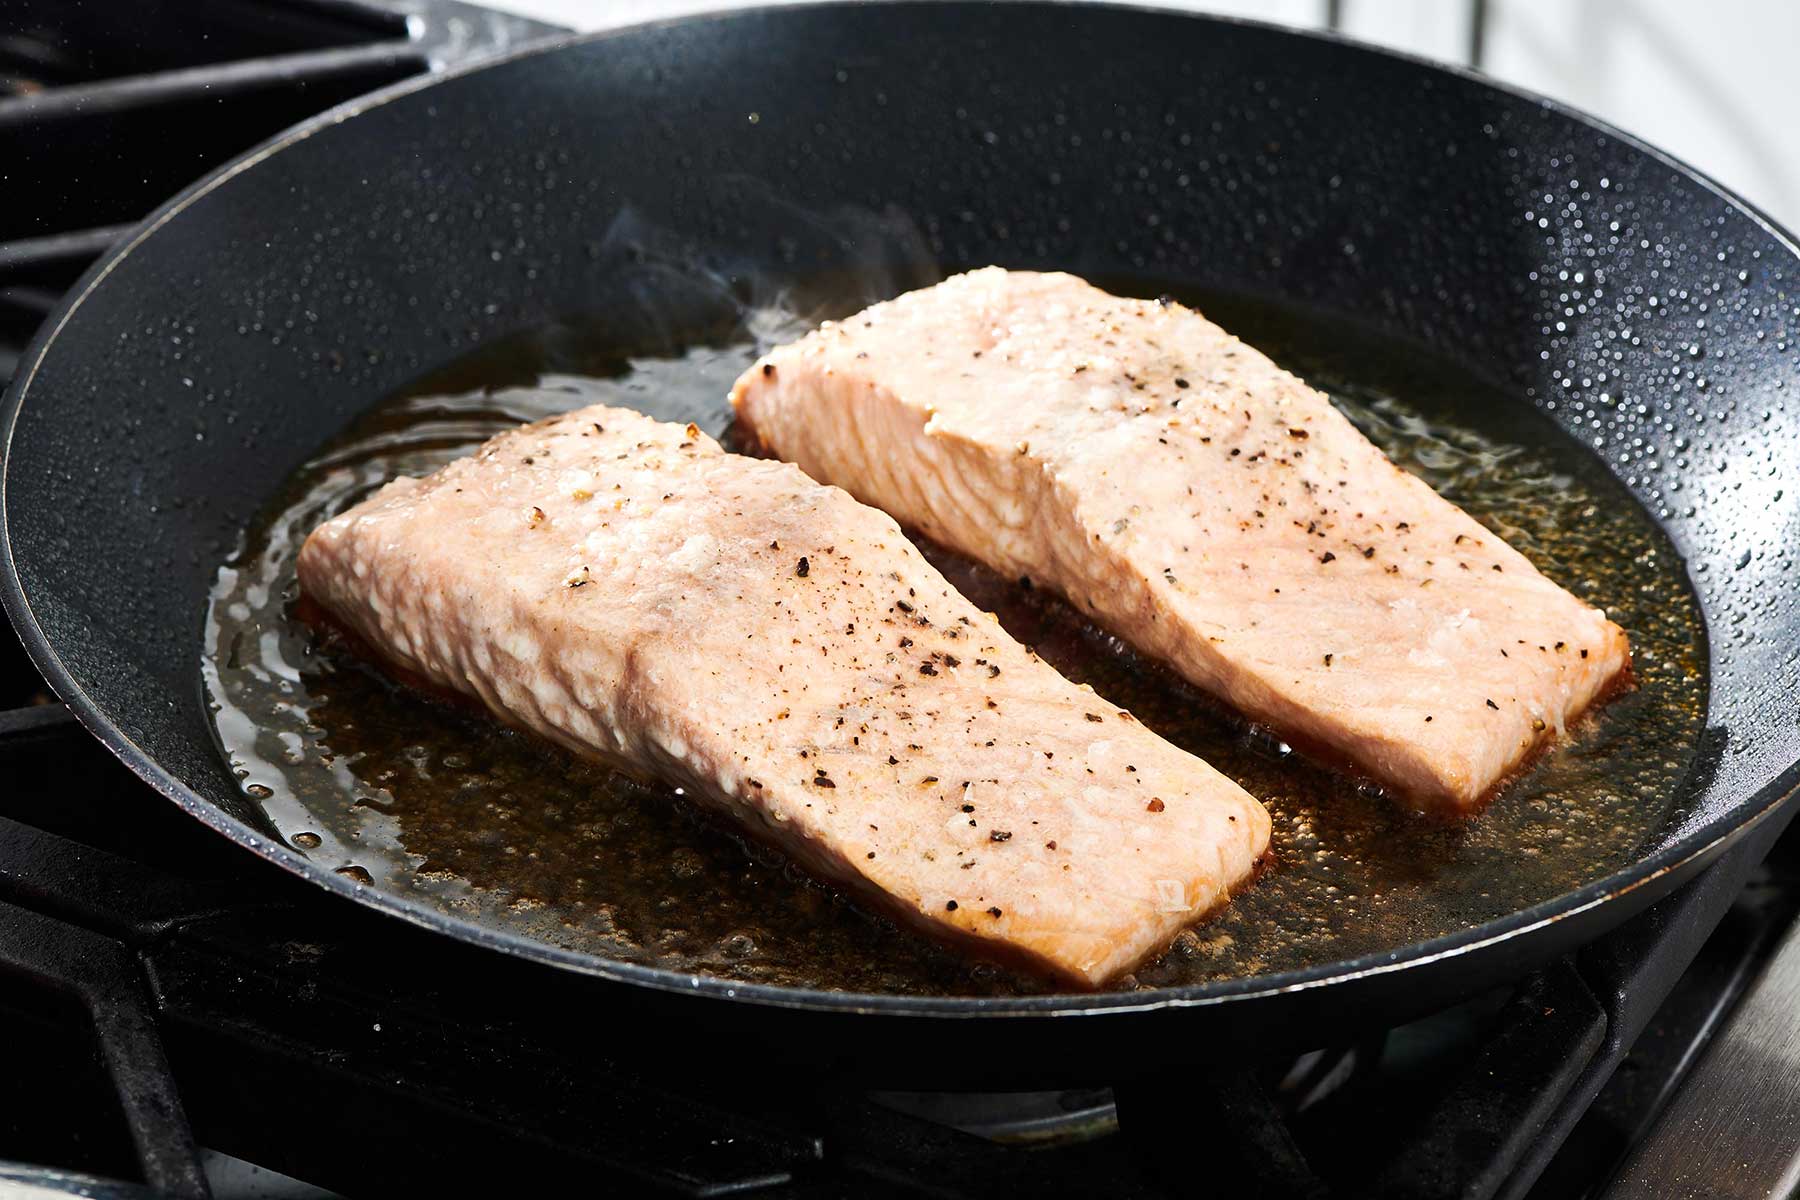 Salmon fillets cooking in skillet to get crispy skin.